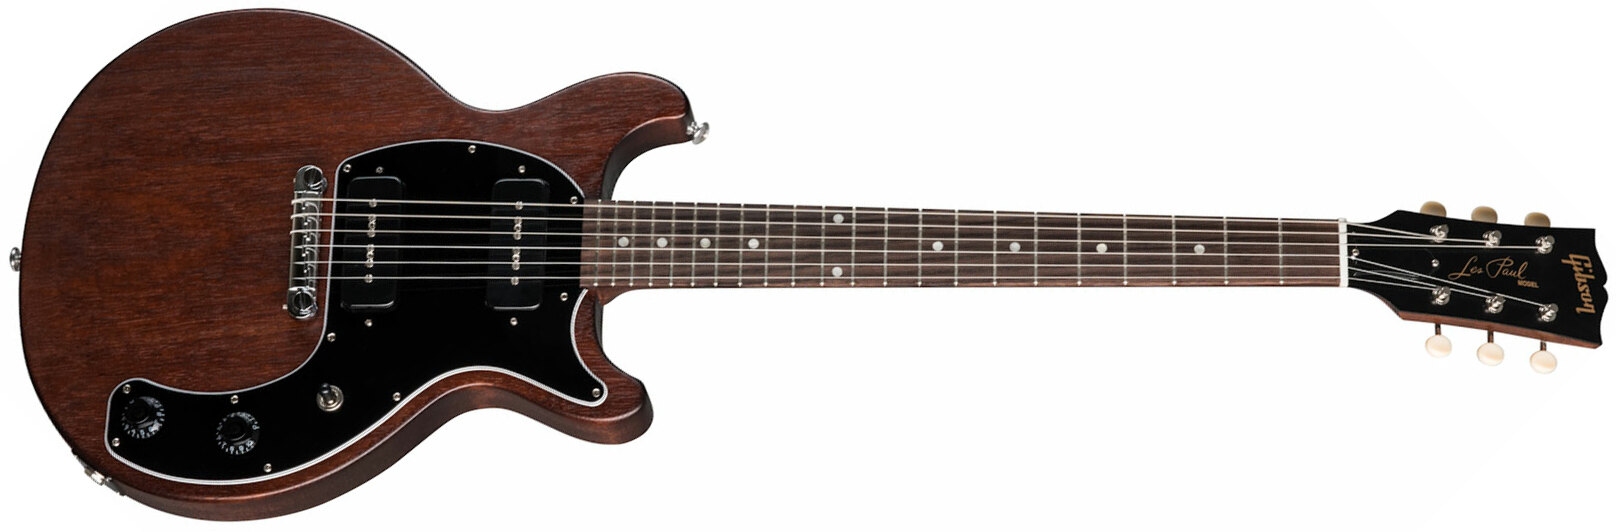 Gibson Les Paul Special Tribute Dc Modern P90 - Worn Brown - Guitarra eléctrica de doble corte. - Main picture